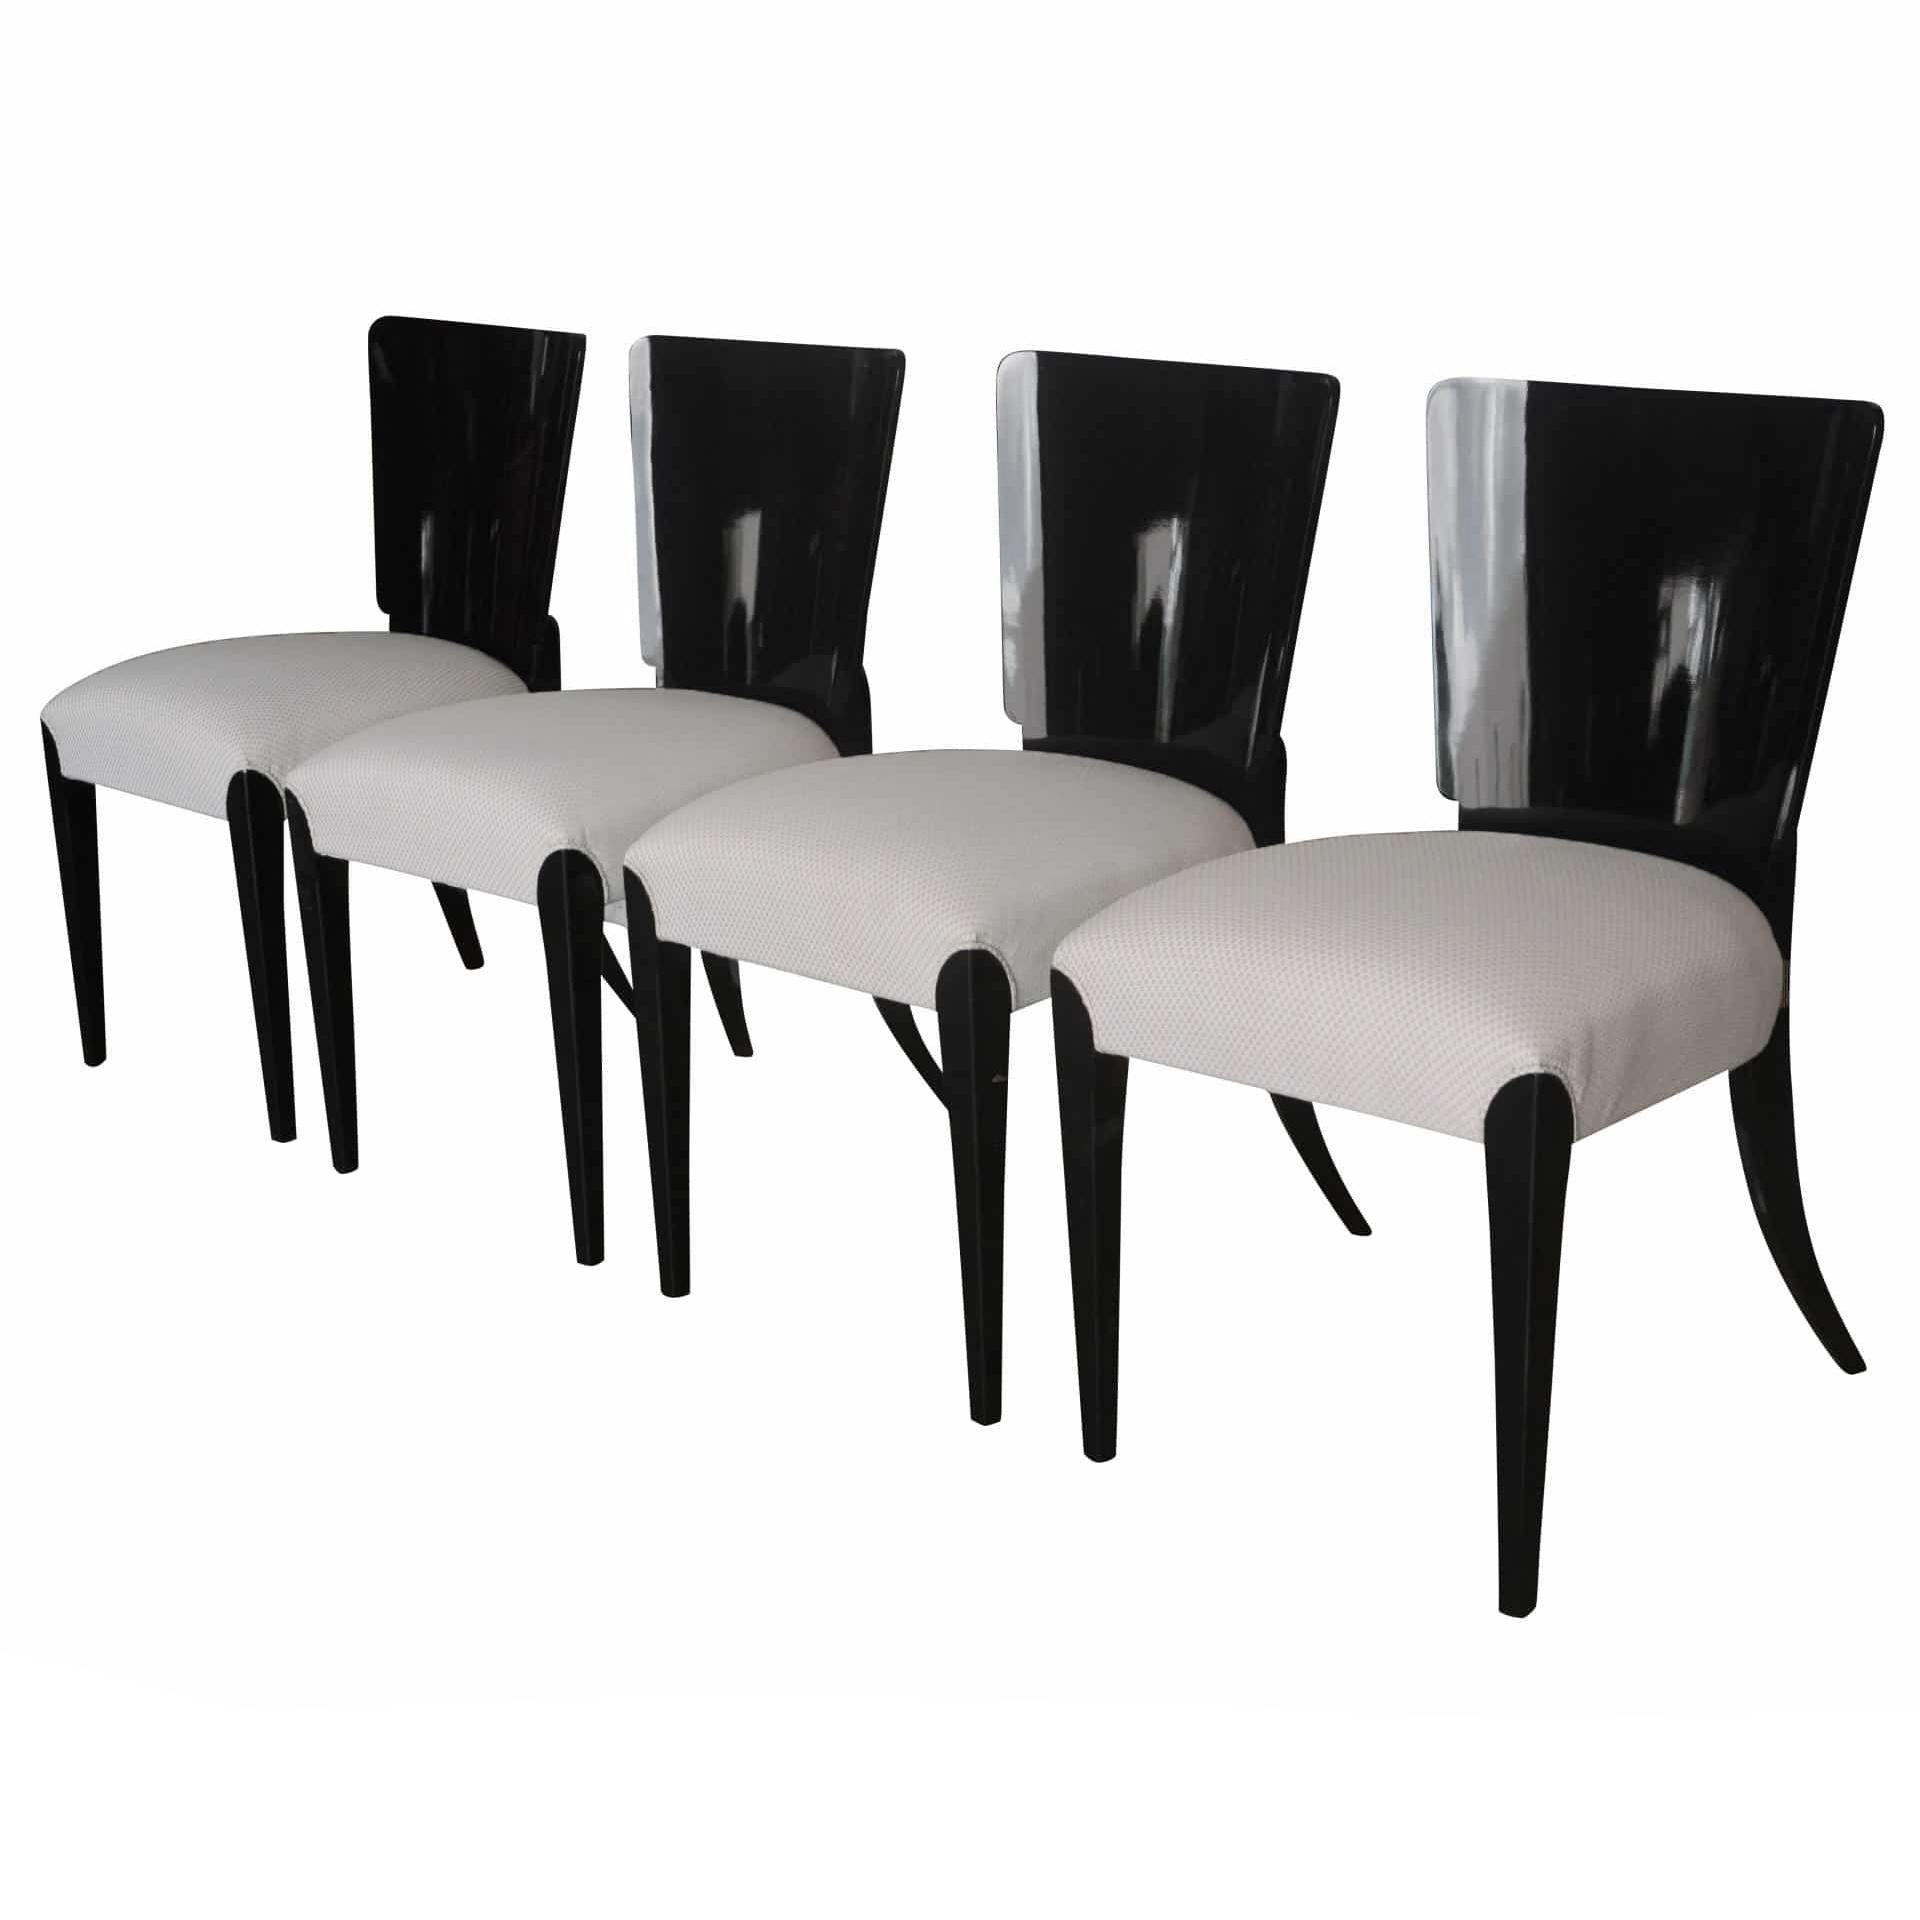 Ein Satz von vier schwarz ebonisierten Art Deco Stühlen aus Holz mit weißer Polsterung, entworfen von Jindrich Halabala. Neu gepolstert in gutem Zustand. Alters- und gebrauchsbedingte Abnutzung, um 1930, Tschechische Republik.

Maße: Sitz: 18,5